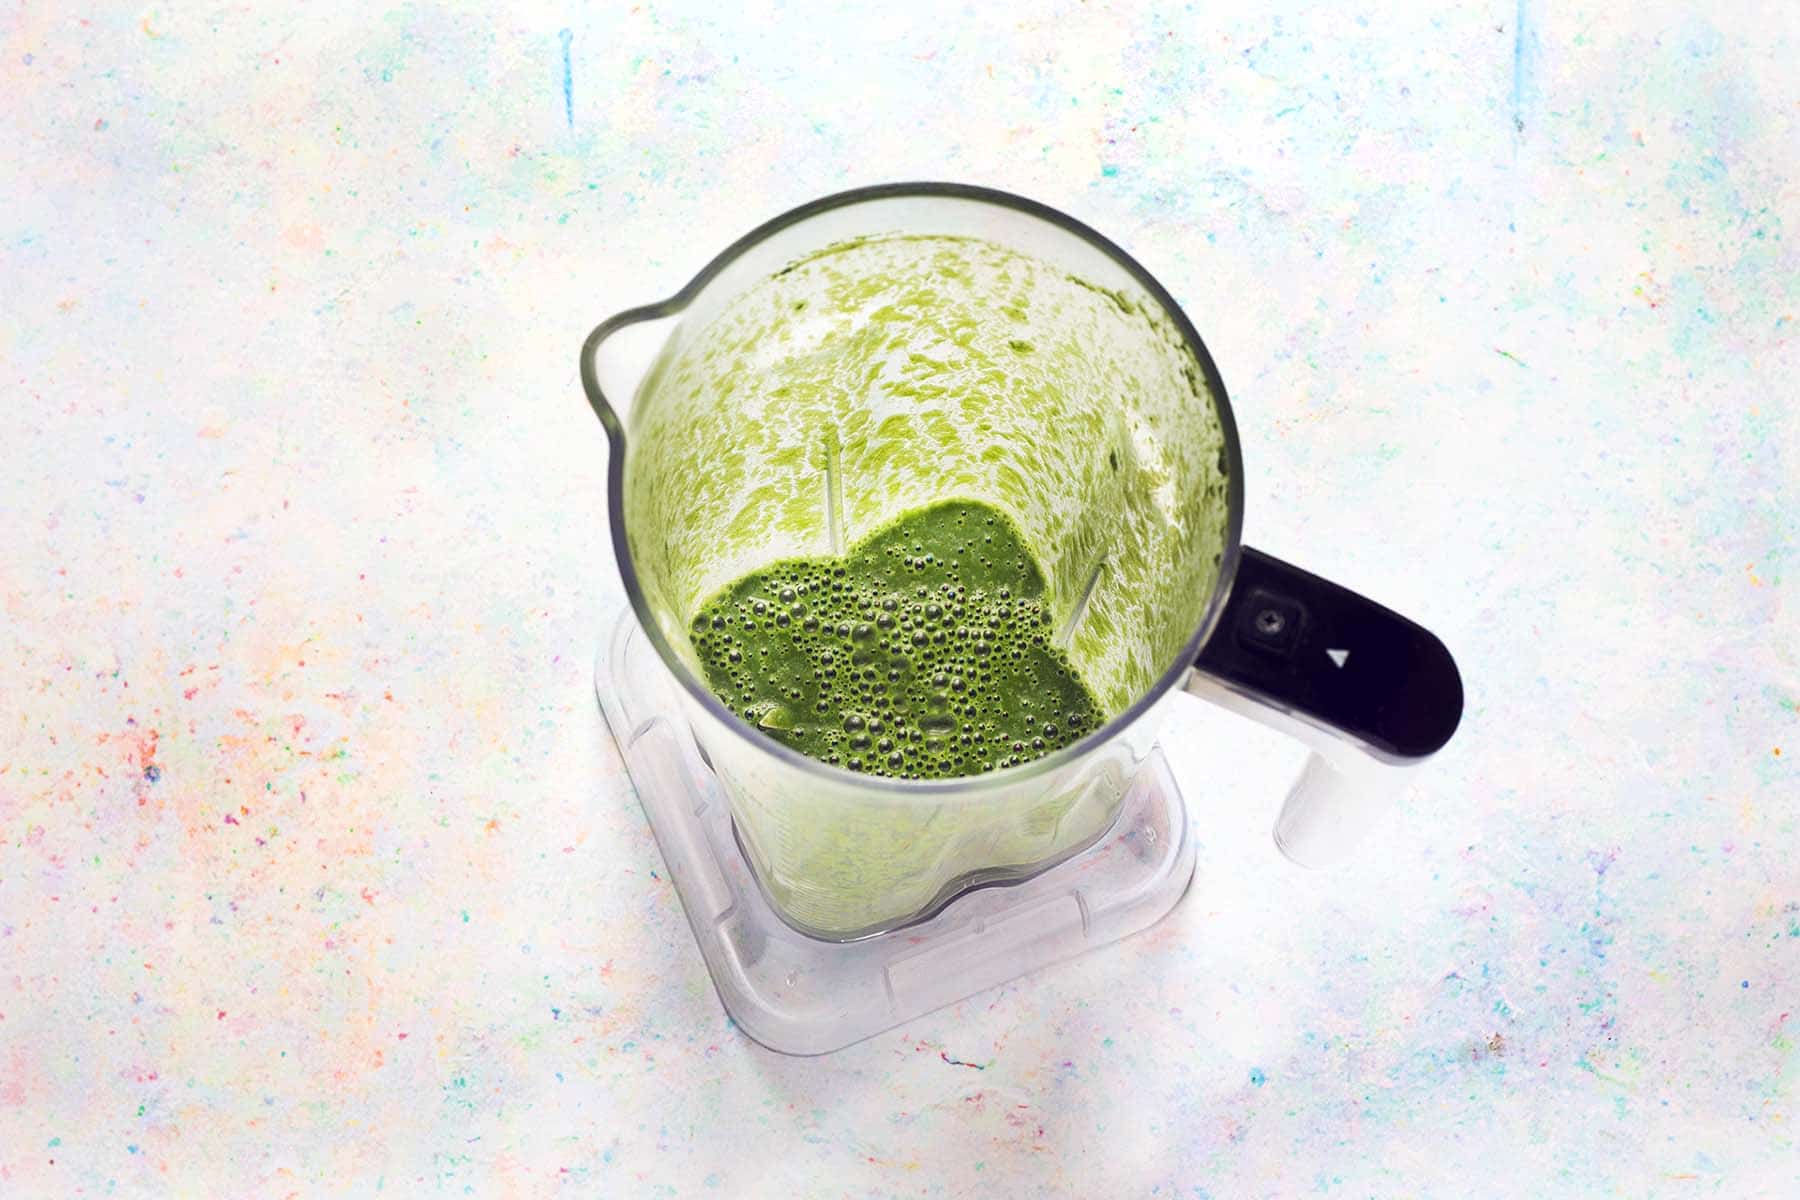 blended spinach and oat milk in blender jug